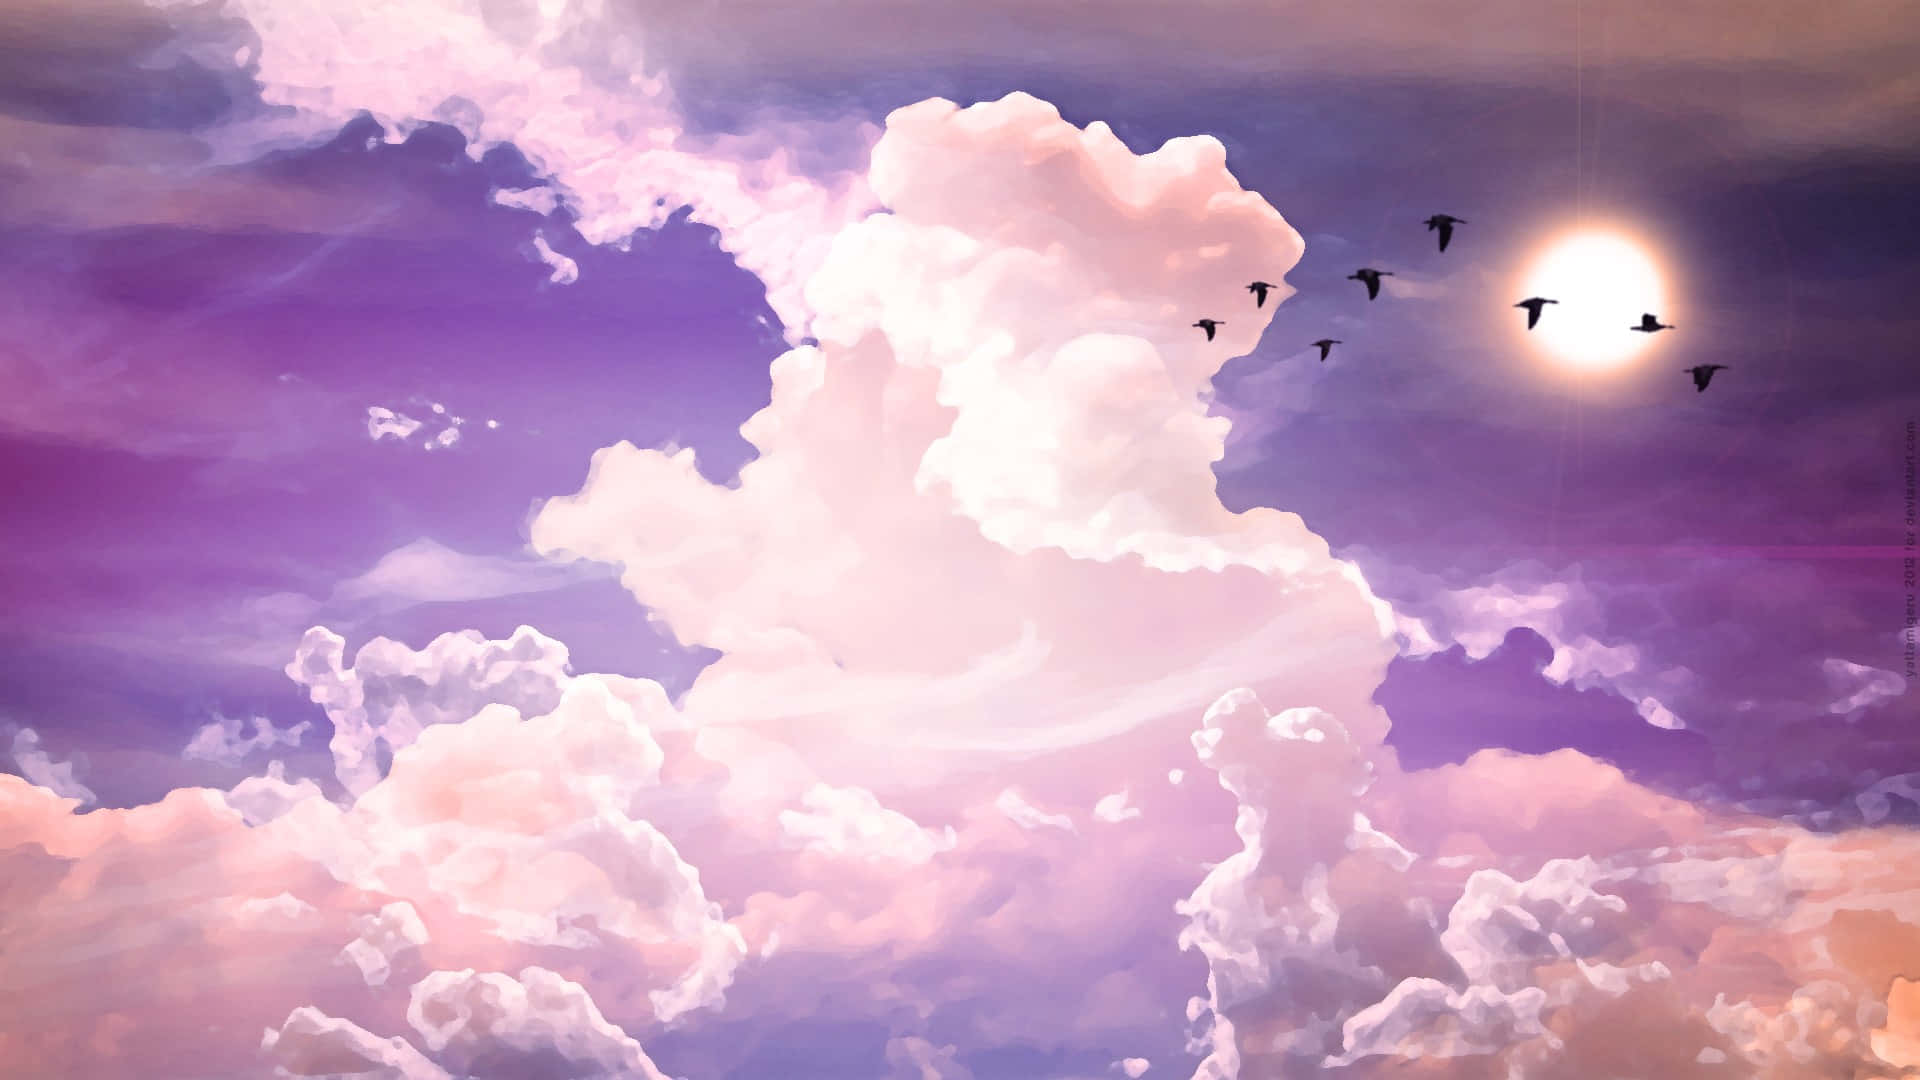 Sfondonero Per Laptop Con Nuvole In Stile Tumblr Dall'estetica Viola Sfondo